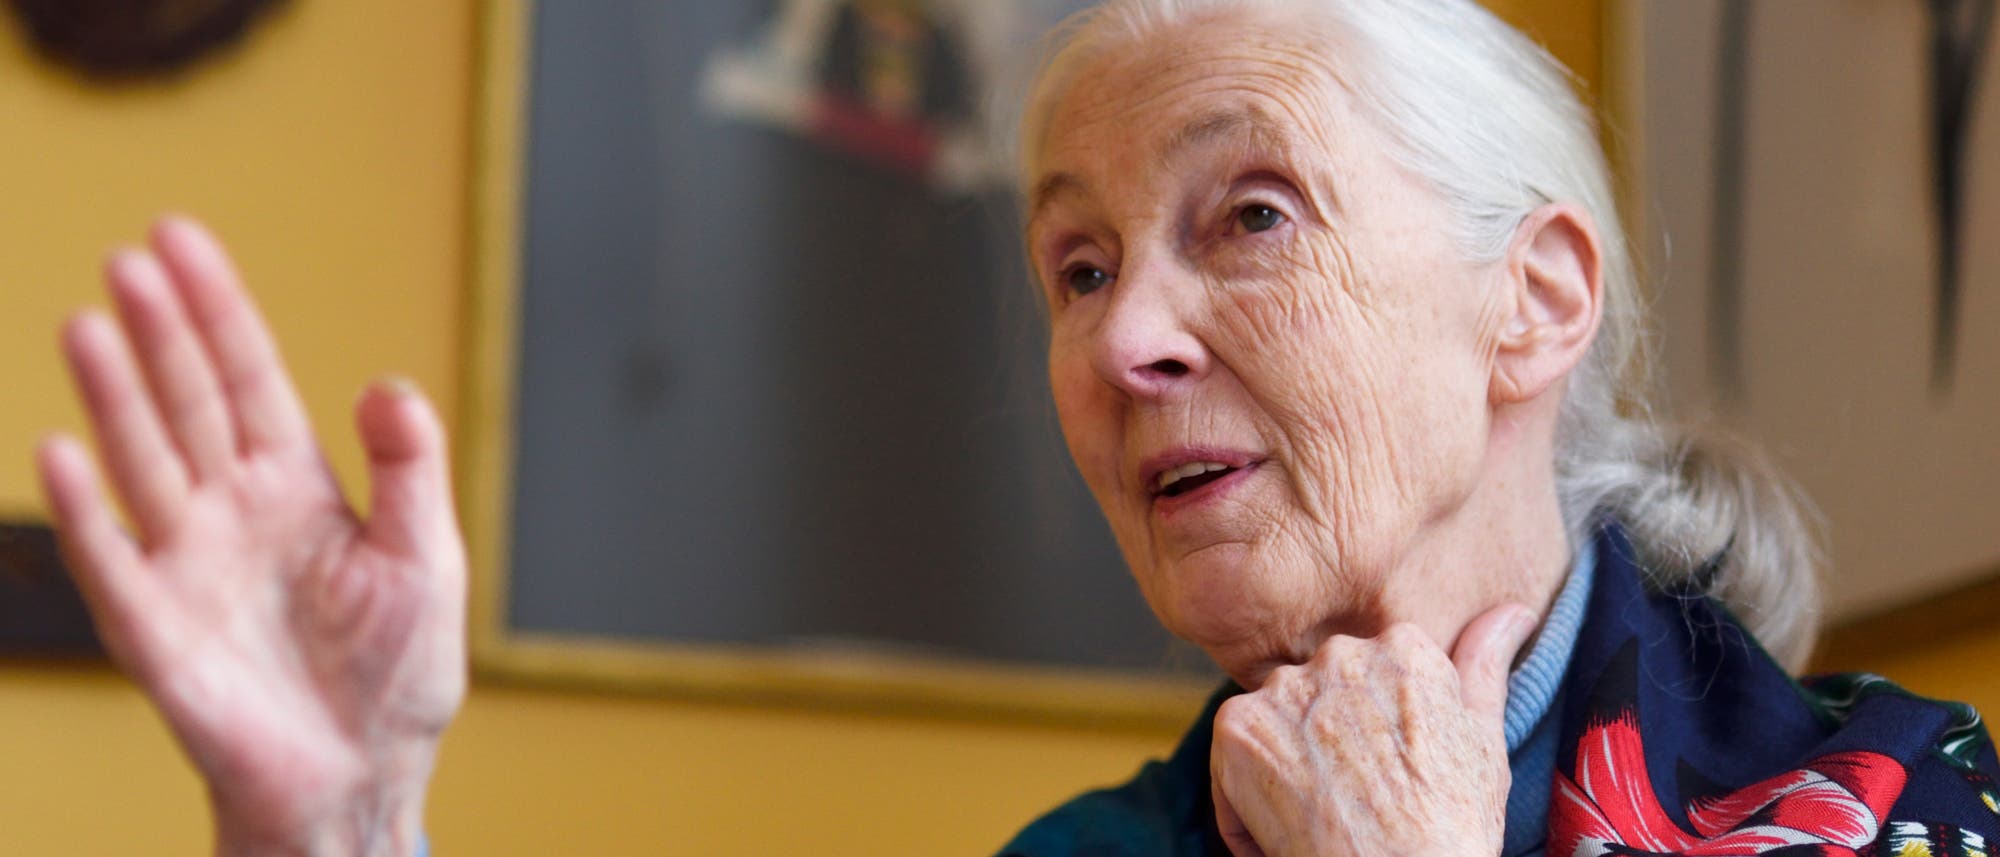 Jane Goodall ist die berühmteste Schimpansenforscherin der Welt. 25 Jahre lang untersuchte sie das Verhalten dieser Menschenaffen.